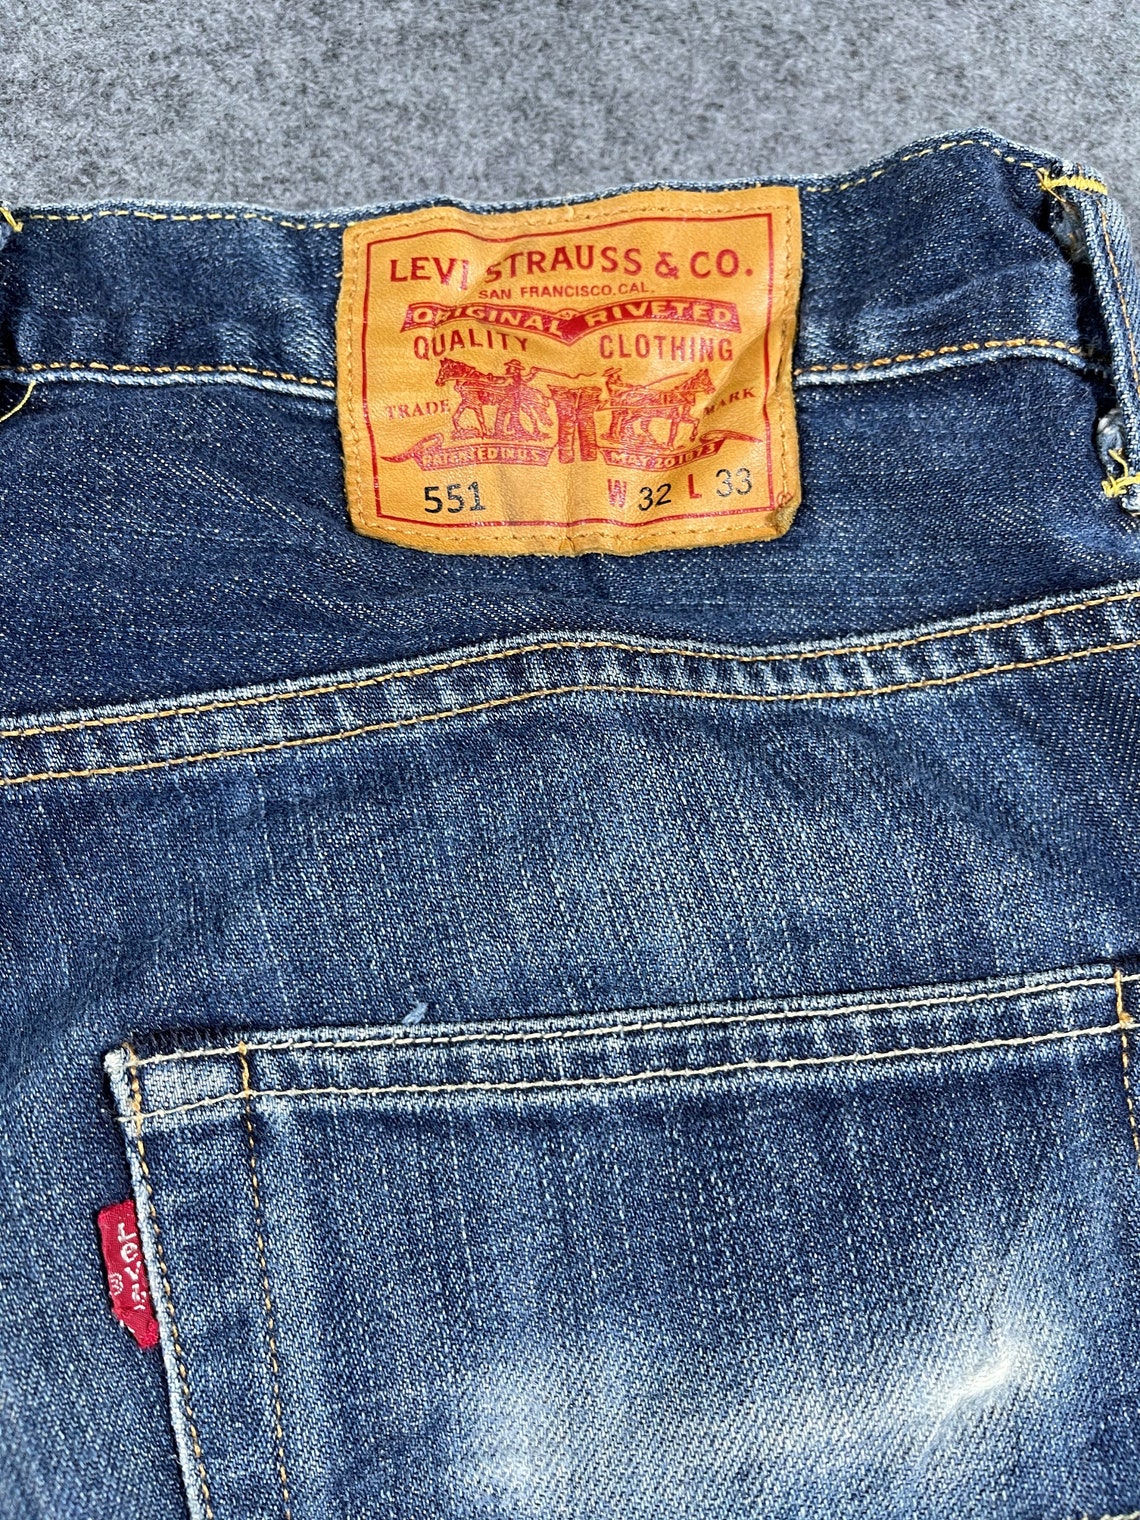 Vintage Levi's 551 Selvedge Jeans 31 x 28 | Etsy